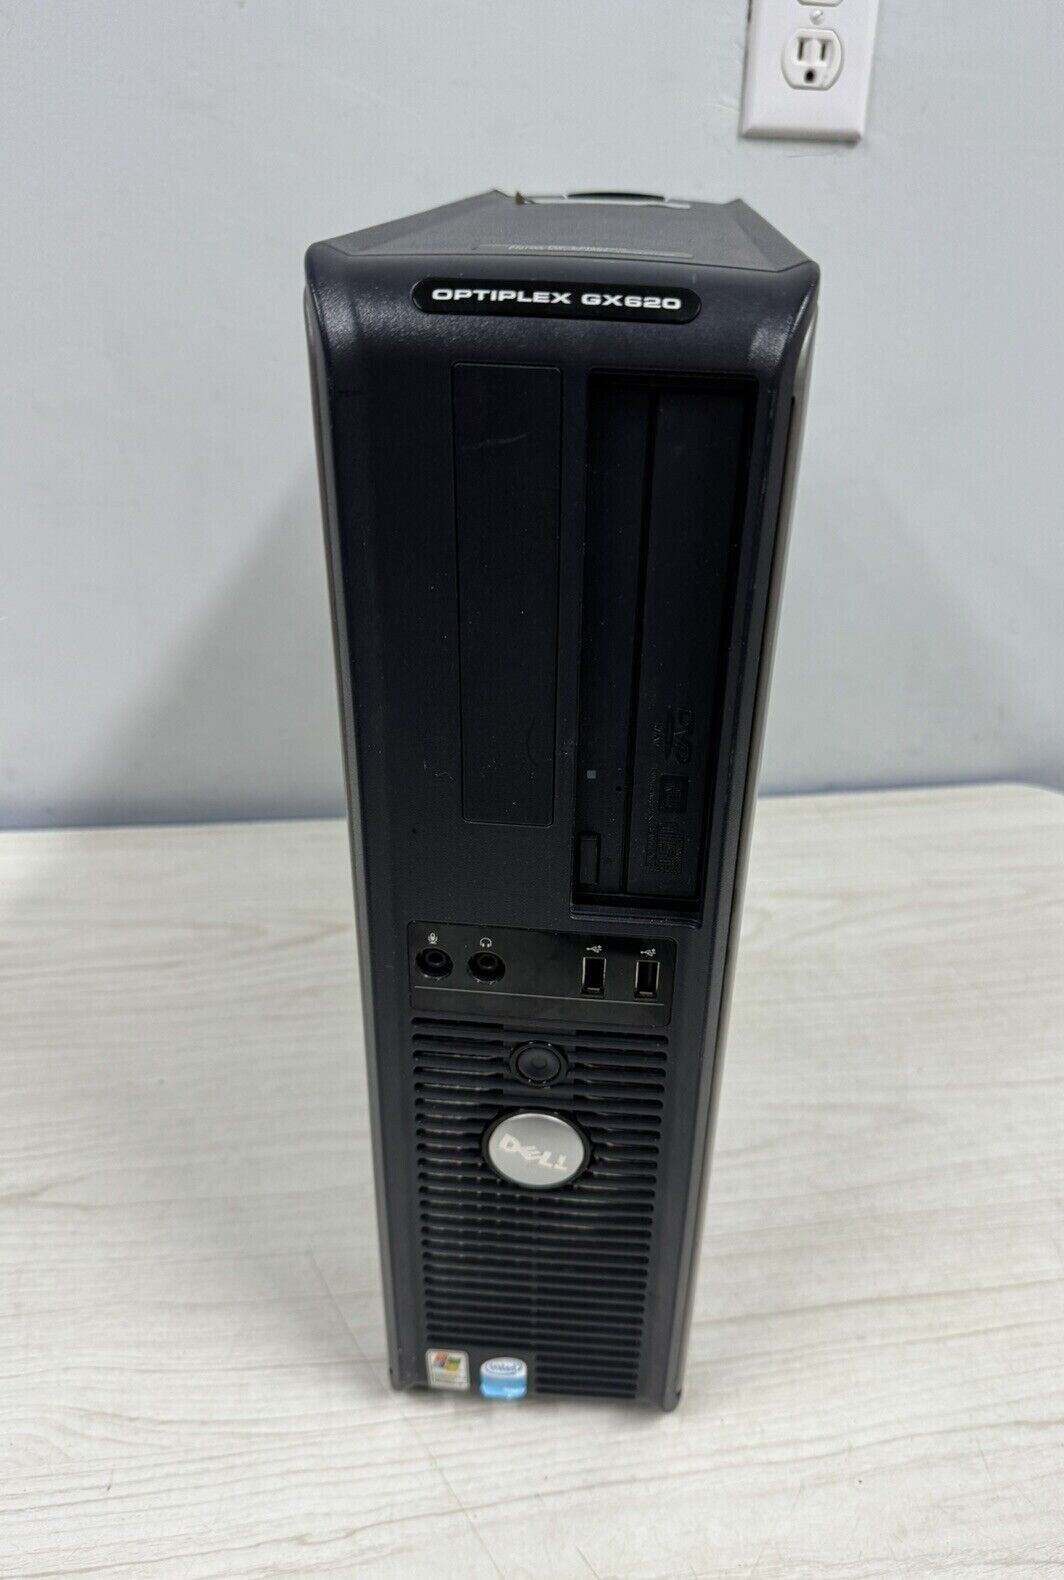 Dell Optiplex GX620 Intel Pentium R 4CPU 3.40GHz 4GB RAM 80GB HD Windows XP Pro